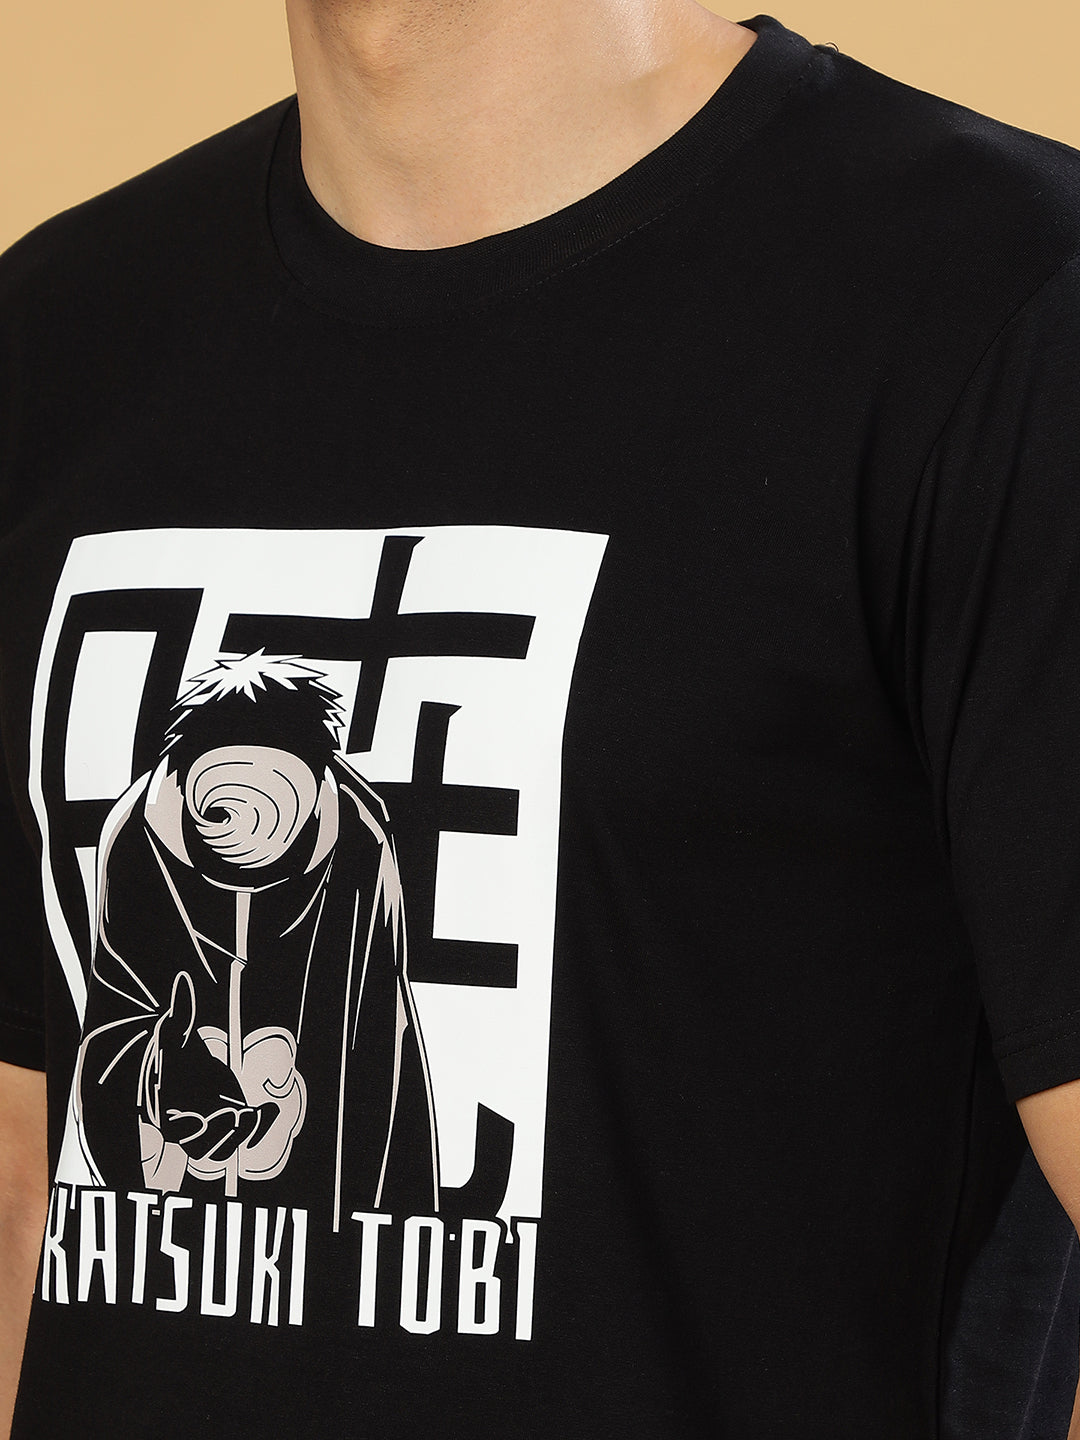 Tobi Black Regular T-Shirts